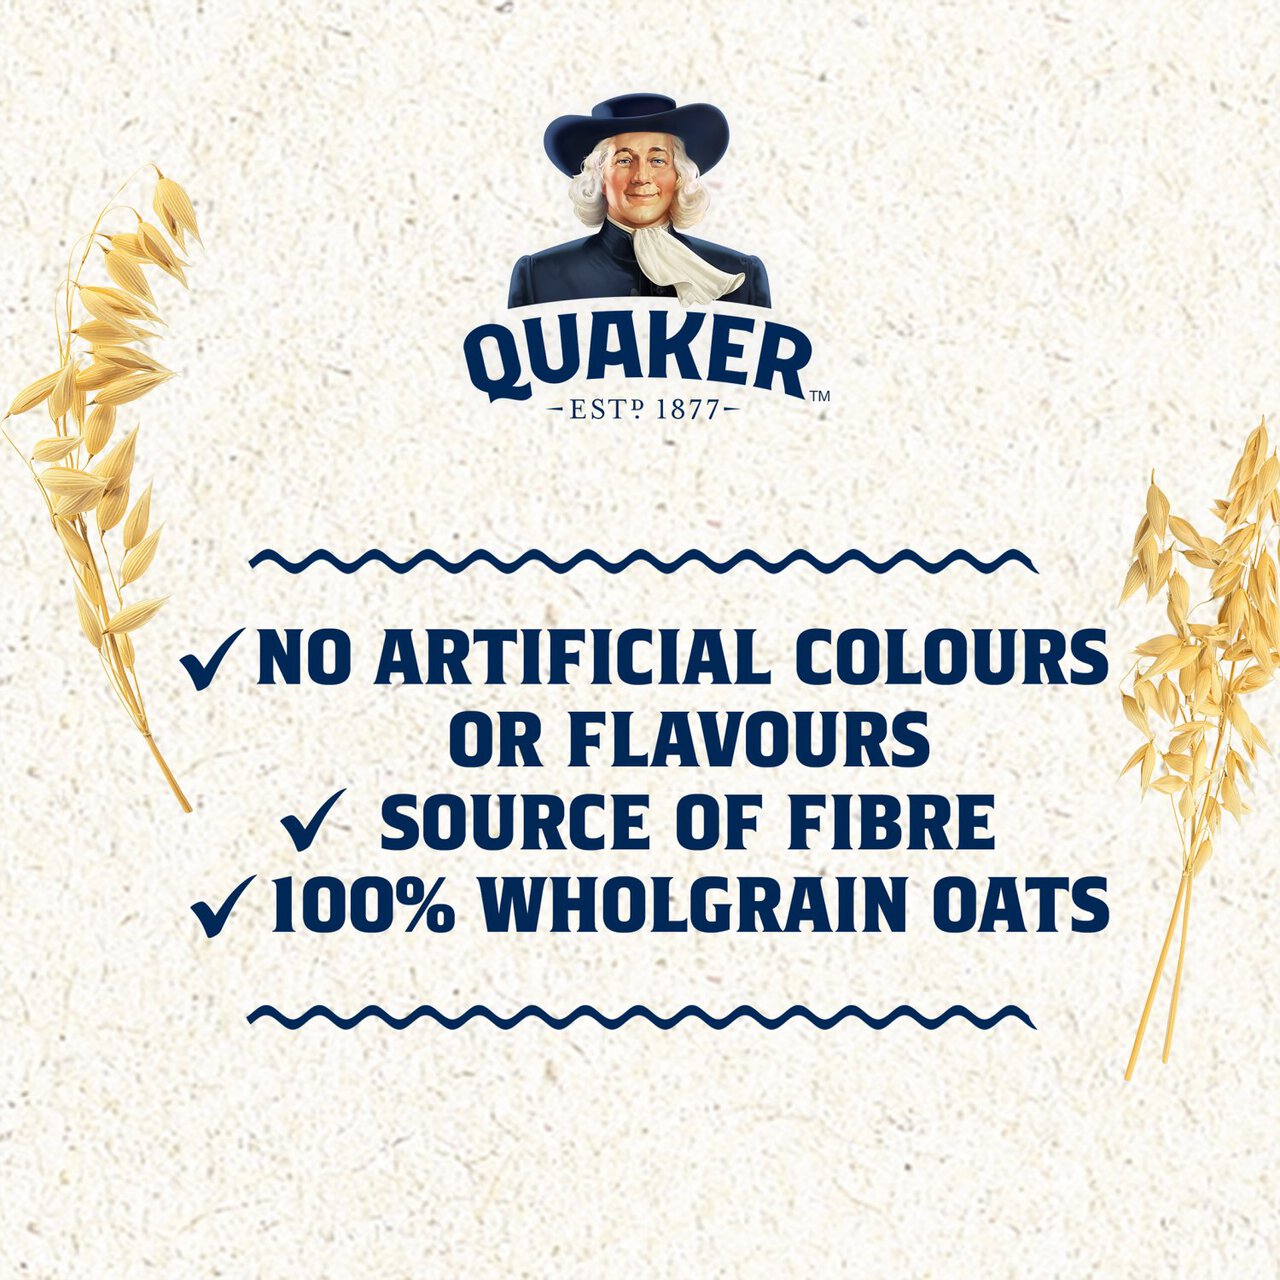 Quaker Oat So Simple Apple & Blueberry Porridge Cereal Pot 57g